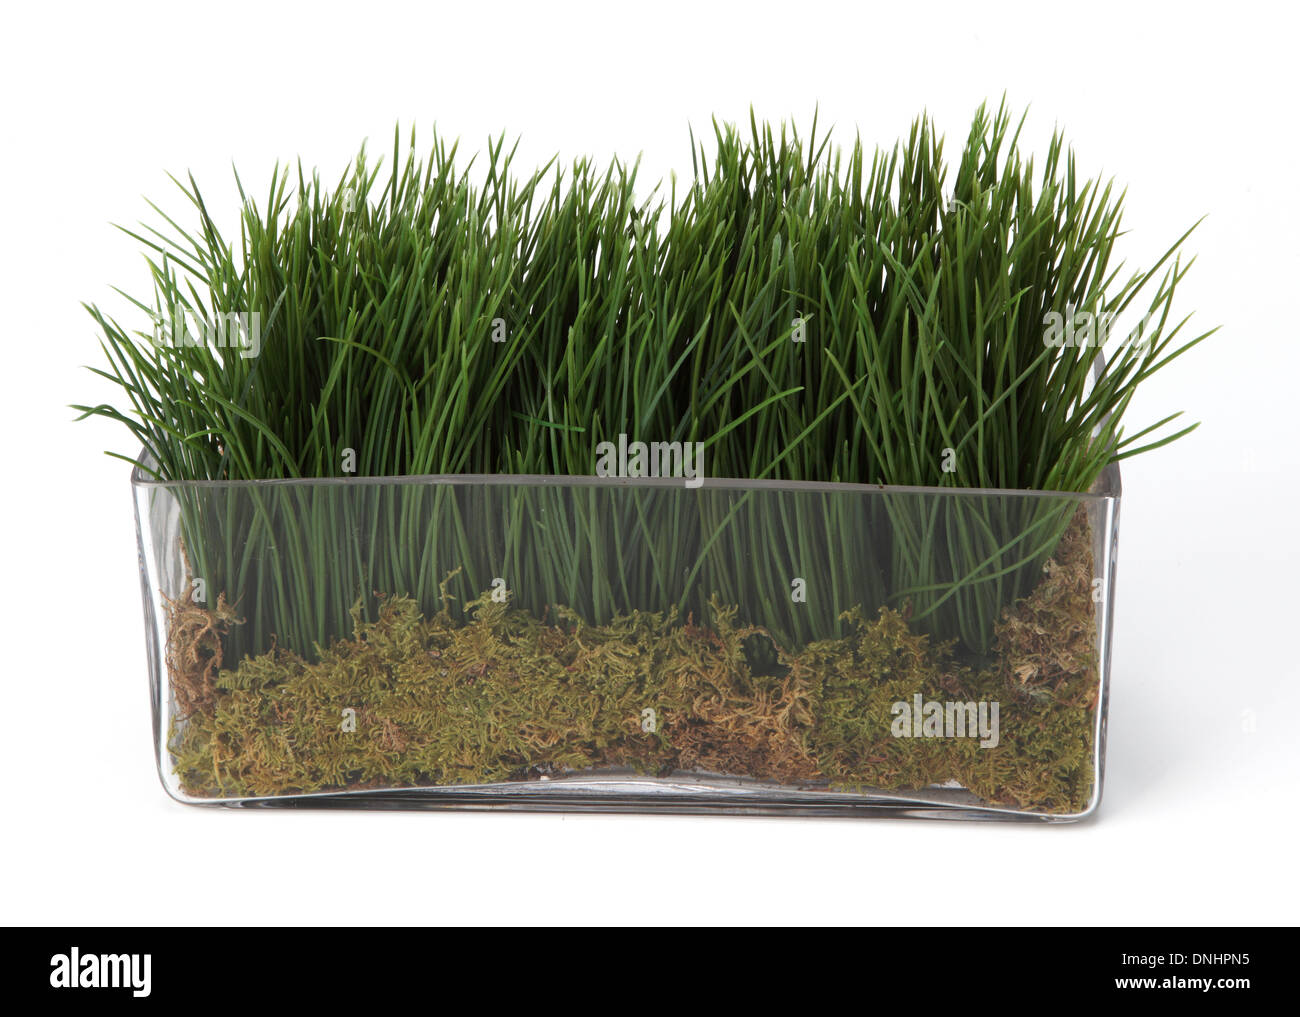 Une petite herbe verte plante dans un récipient sur un fond blanc Banque D'Images